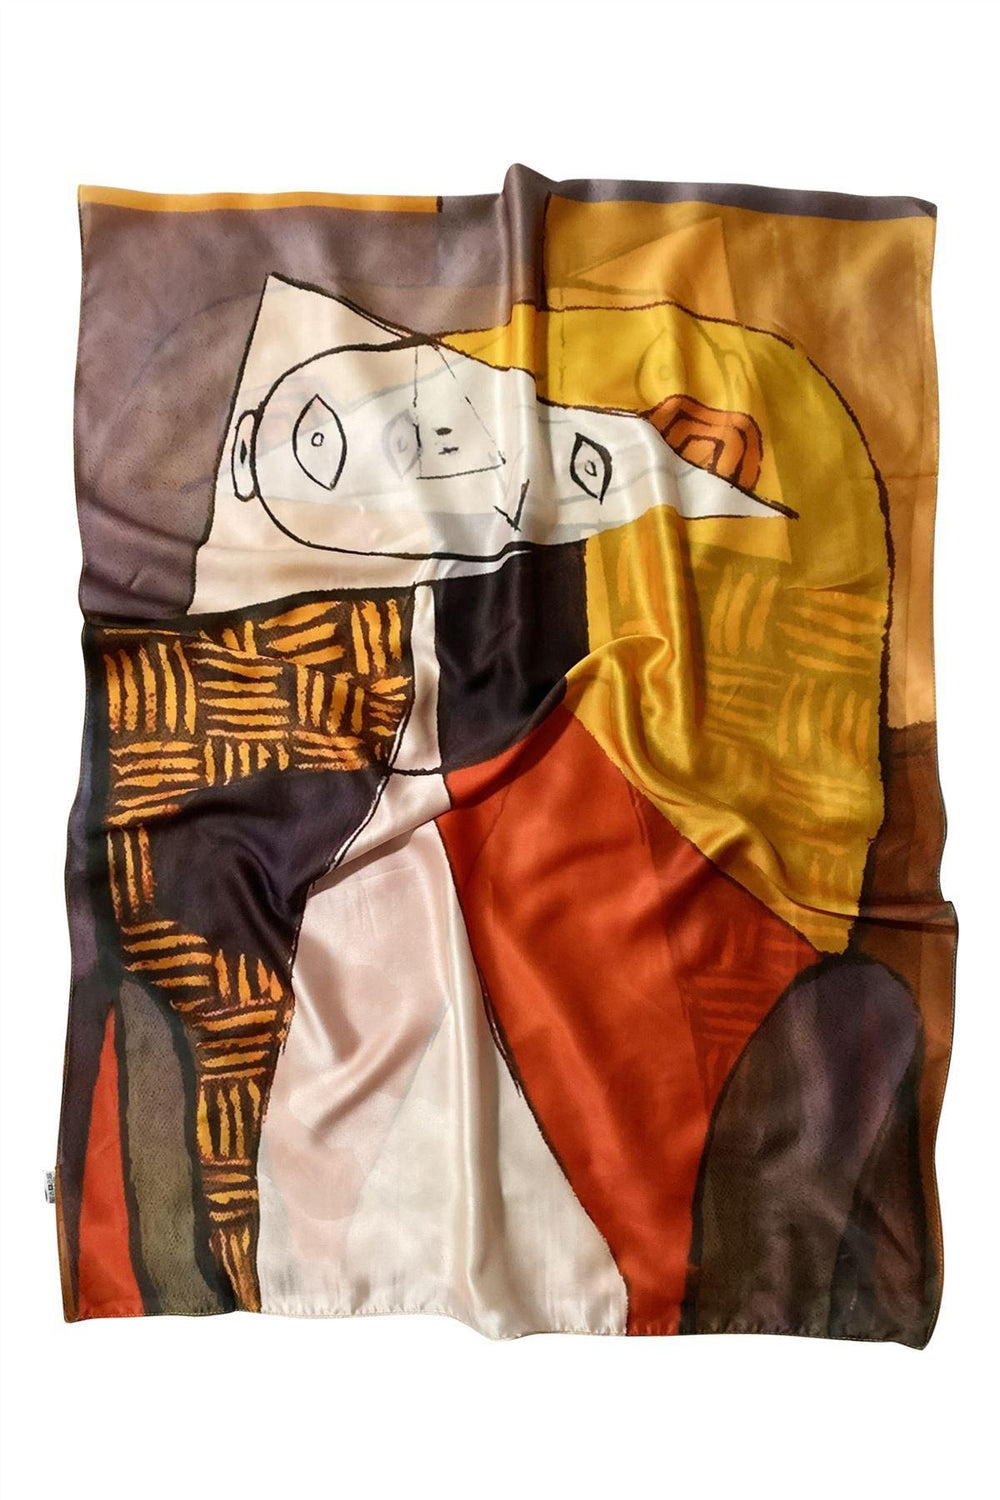 Hedvábná šála-šátek, 70 cm x 180 cm, Picasso - Portrait Style - Multilady.cz